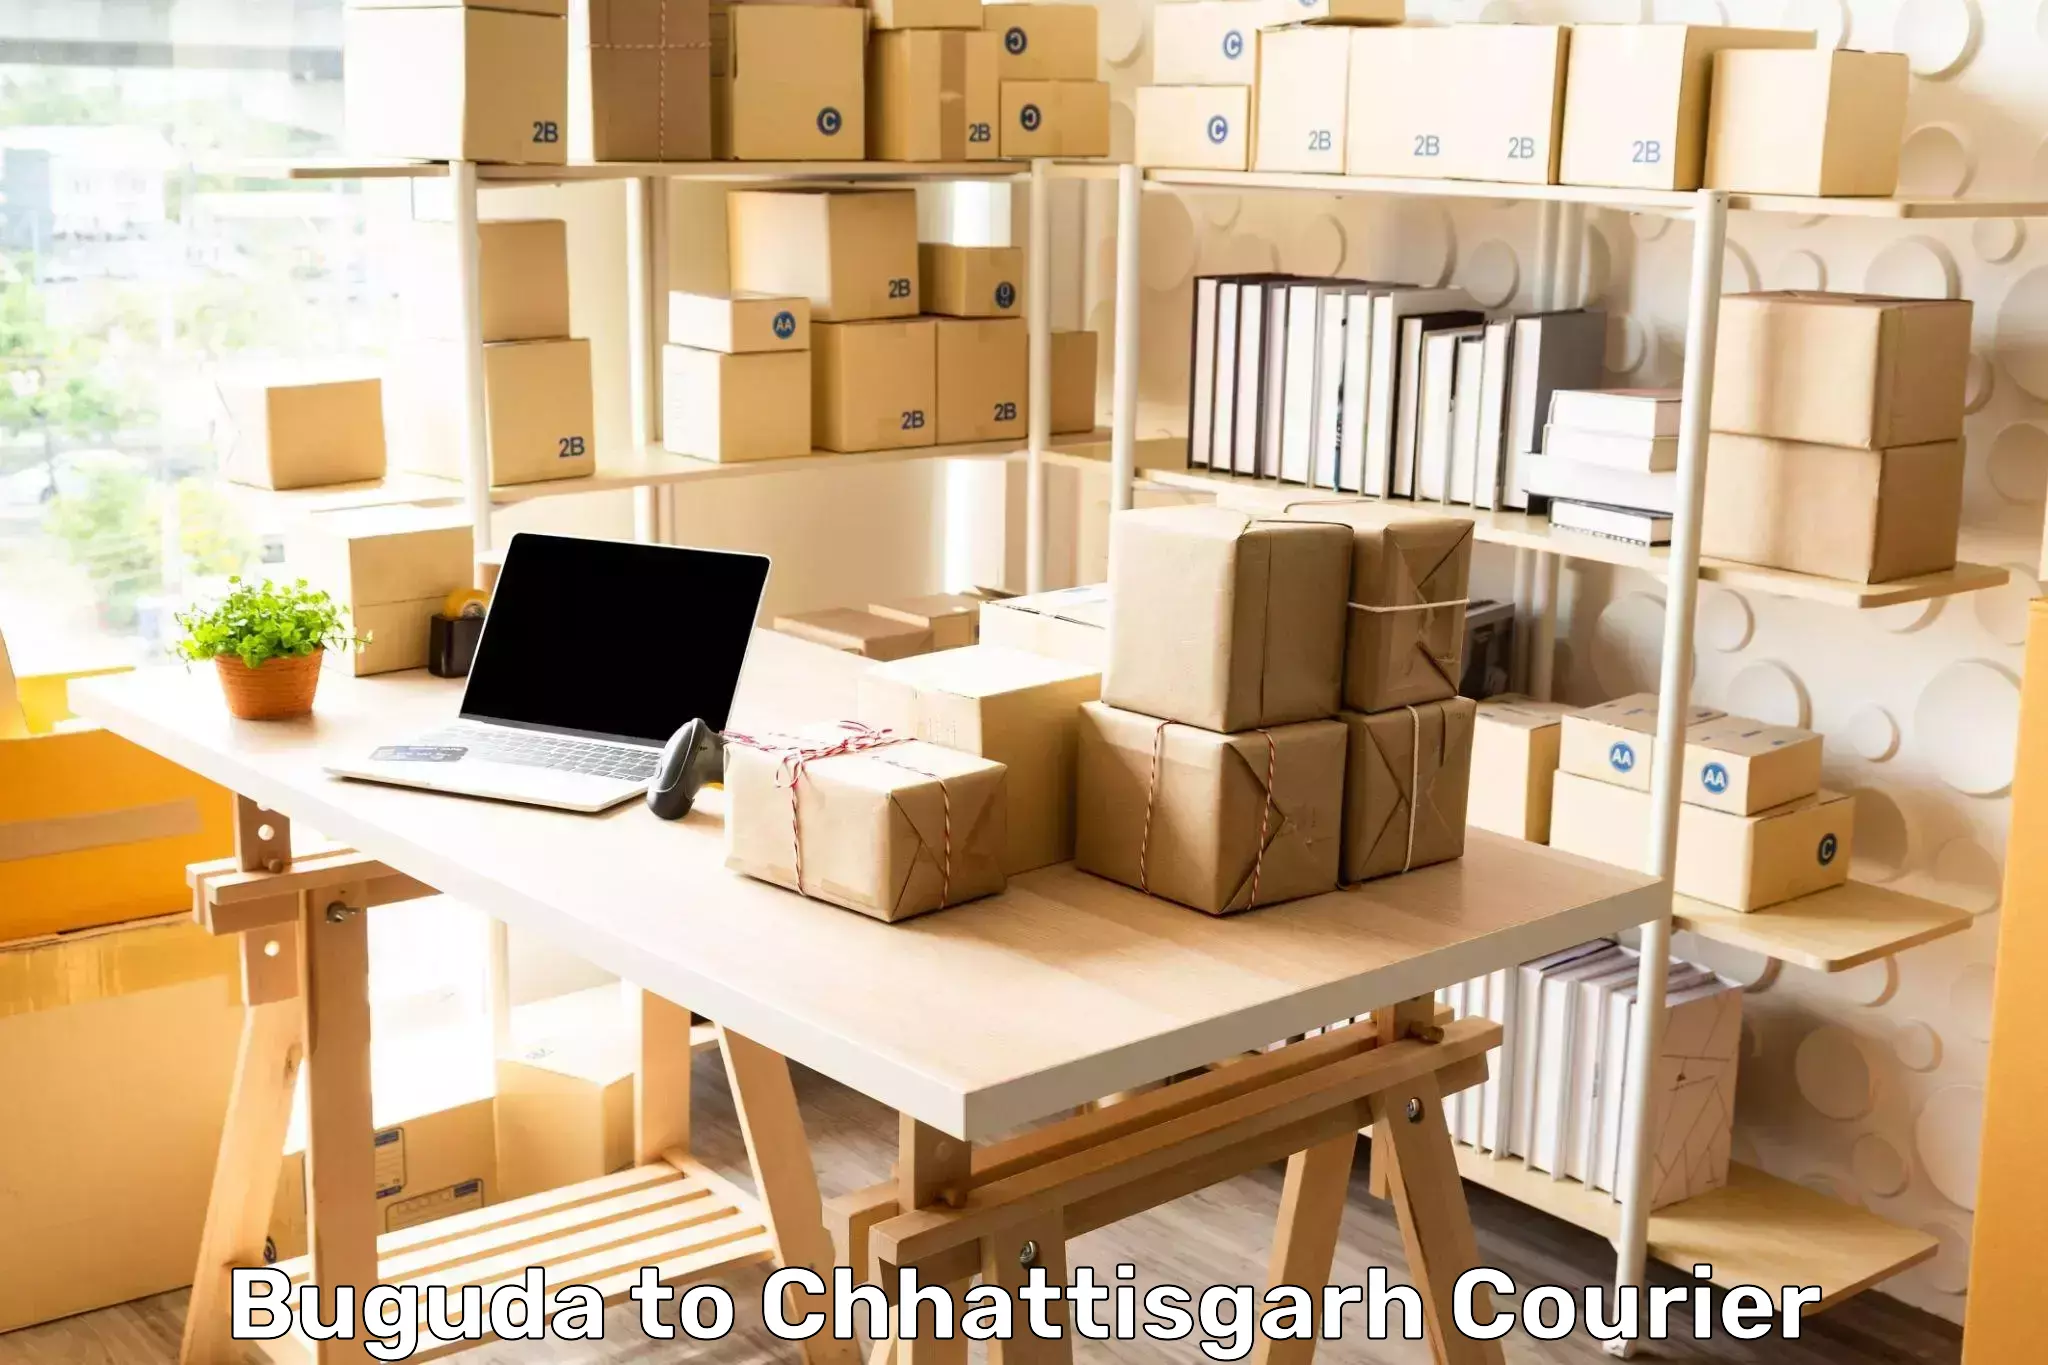 Efficient logistics management Buguda to Chhattisgarh